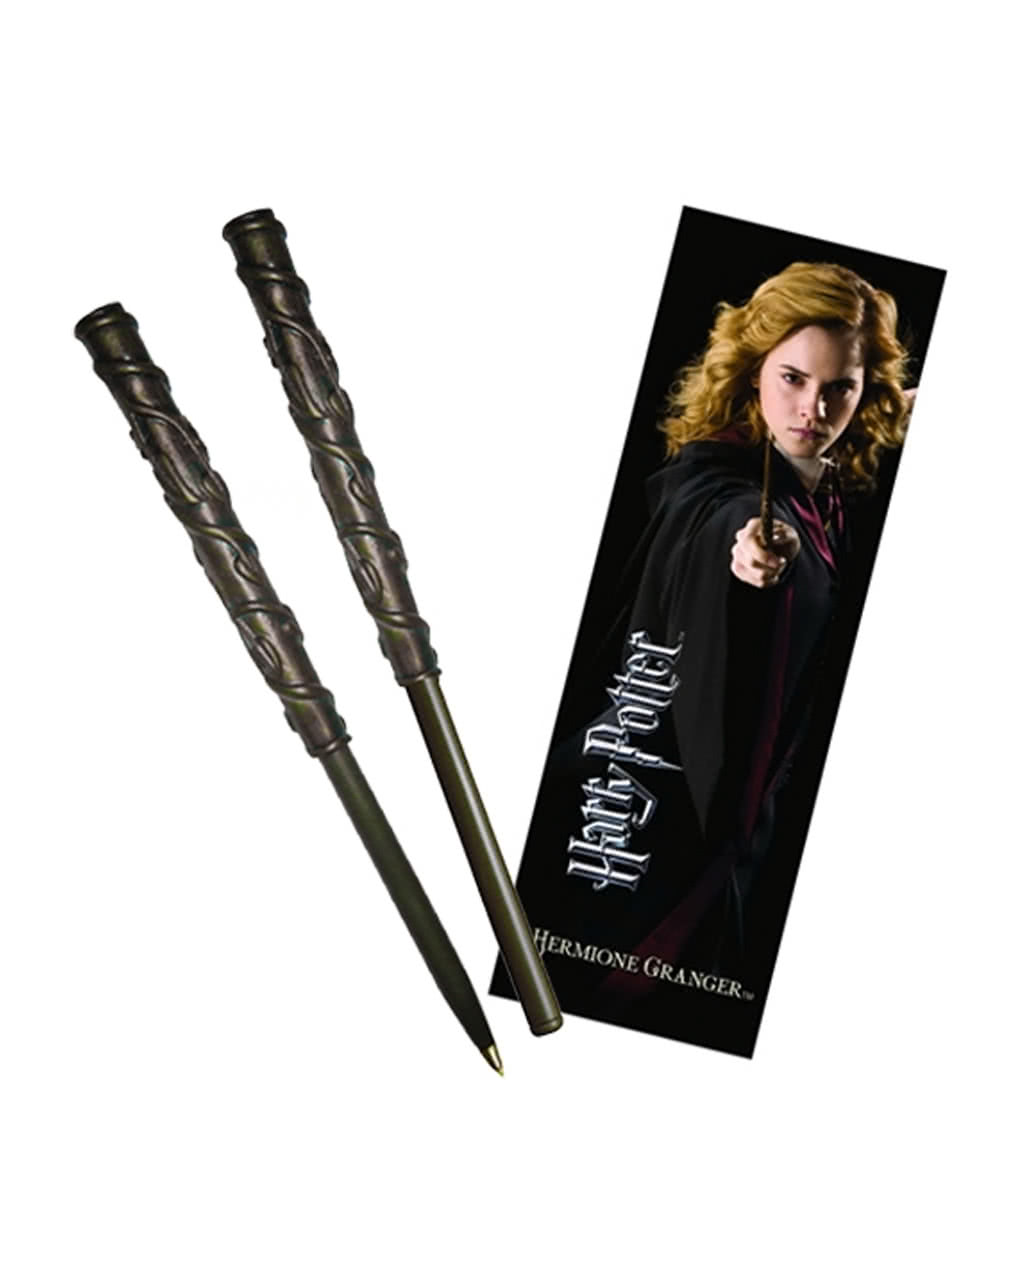 Harry Potter Zauberstab-Stift mit Leuchtfunktion